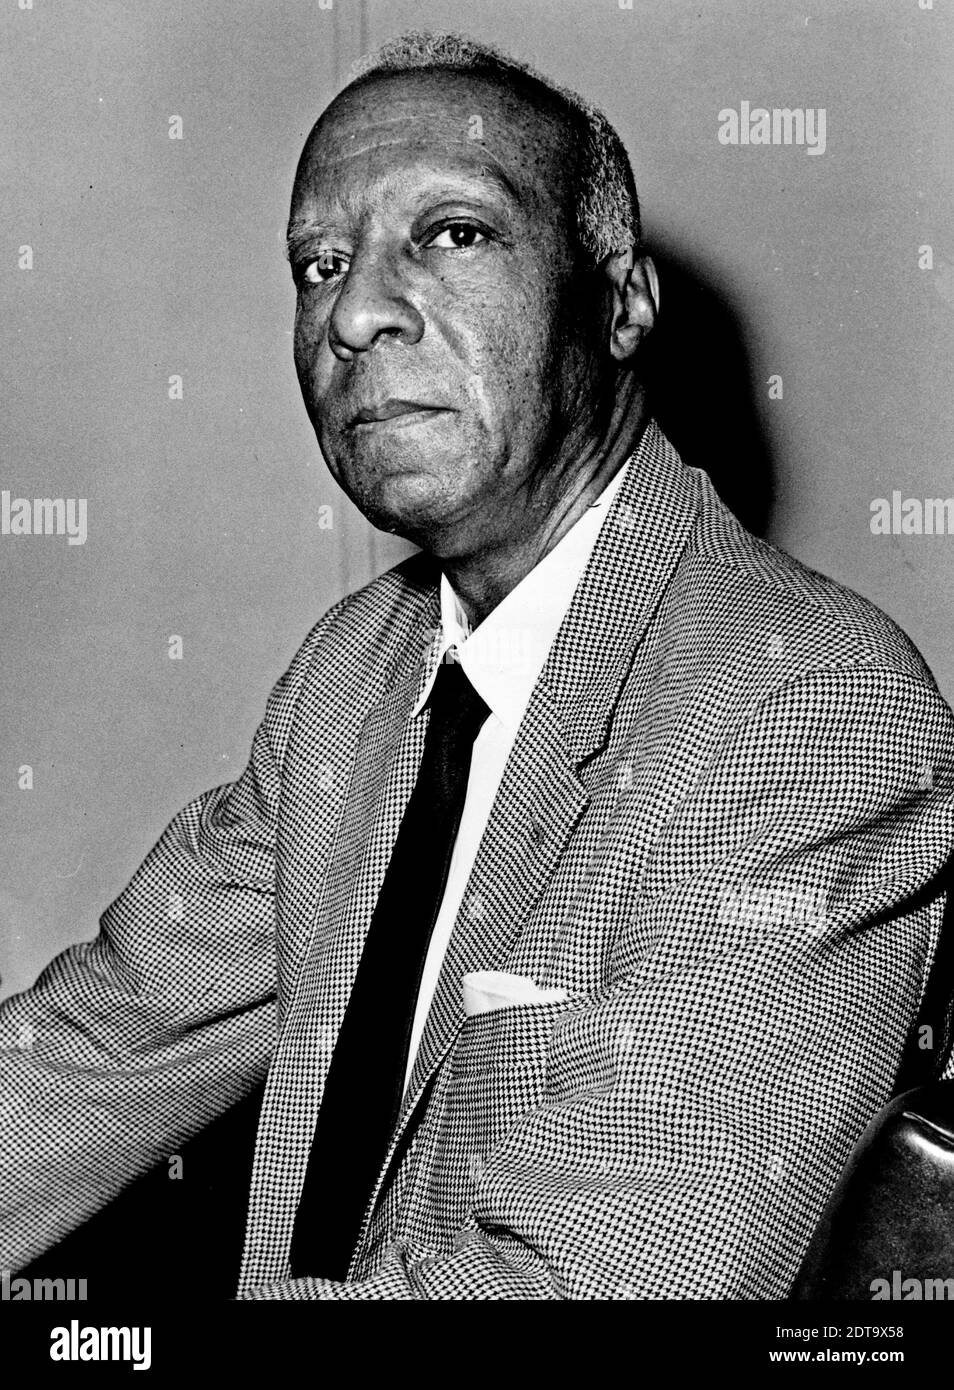 A. Philip Randolph, chef des droits civils aux États-Unis, 1963 Banque D'Images